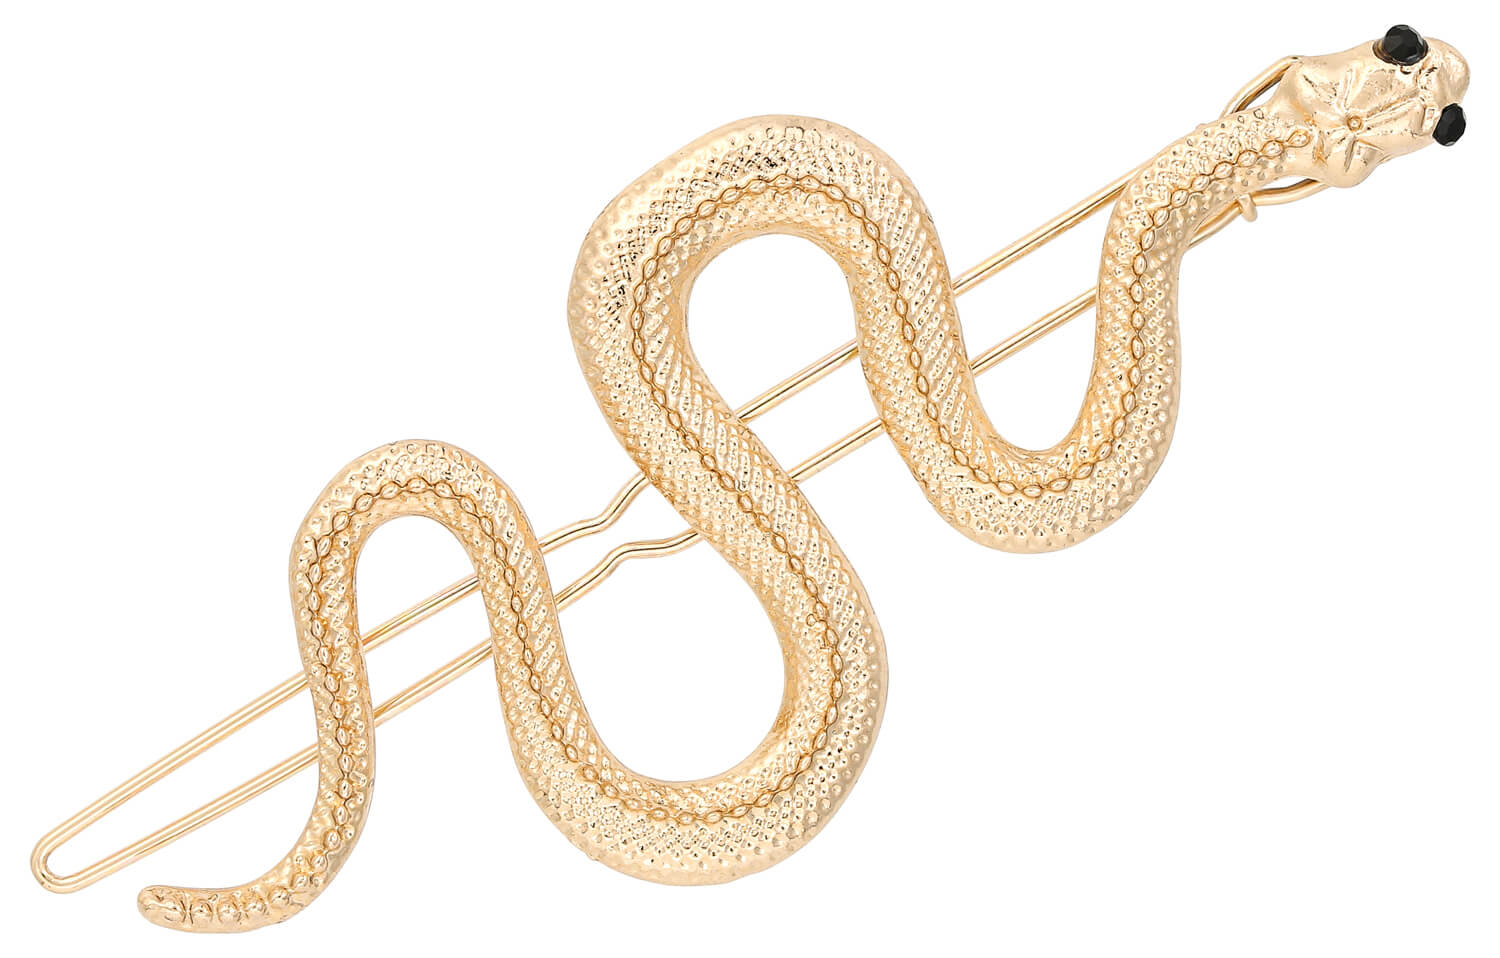 Barrette - Golden Snake